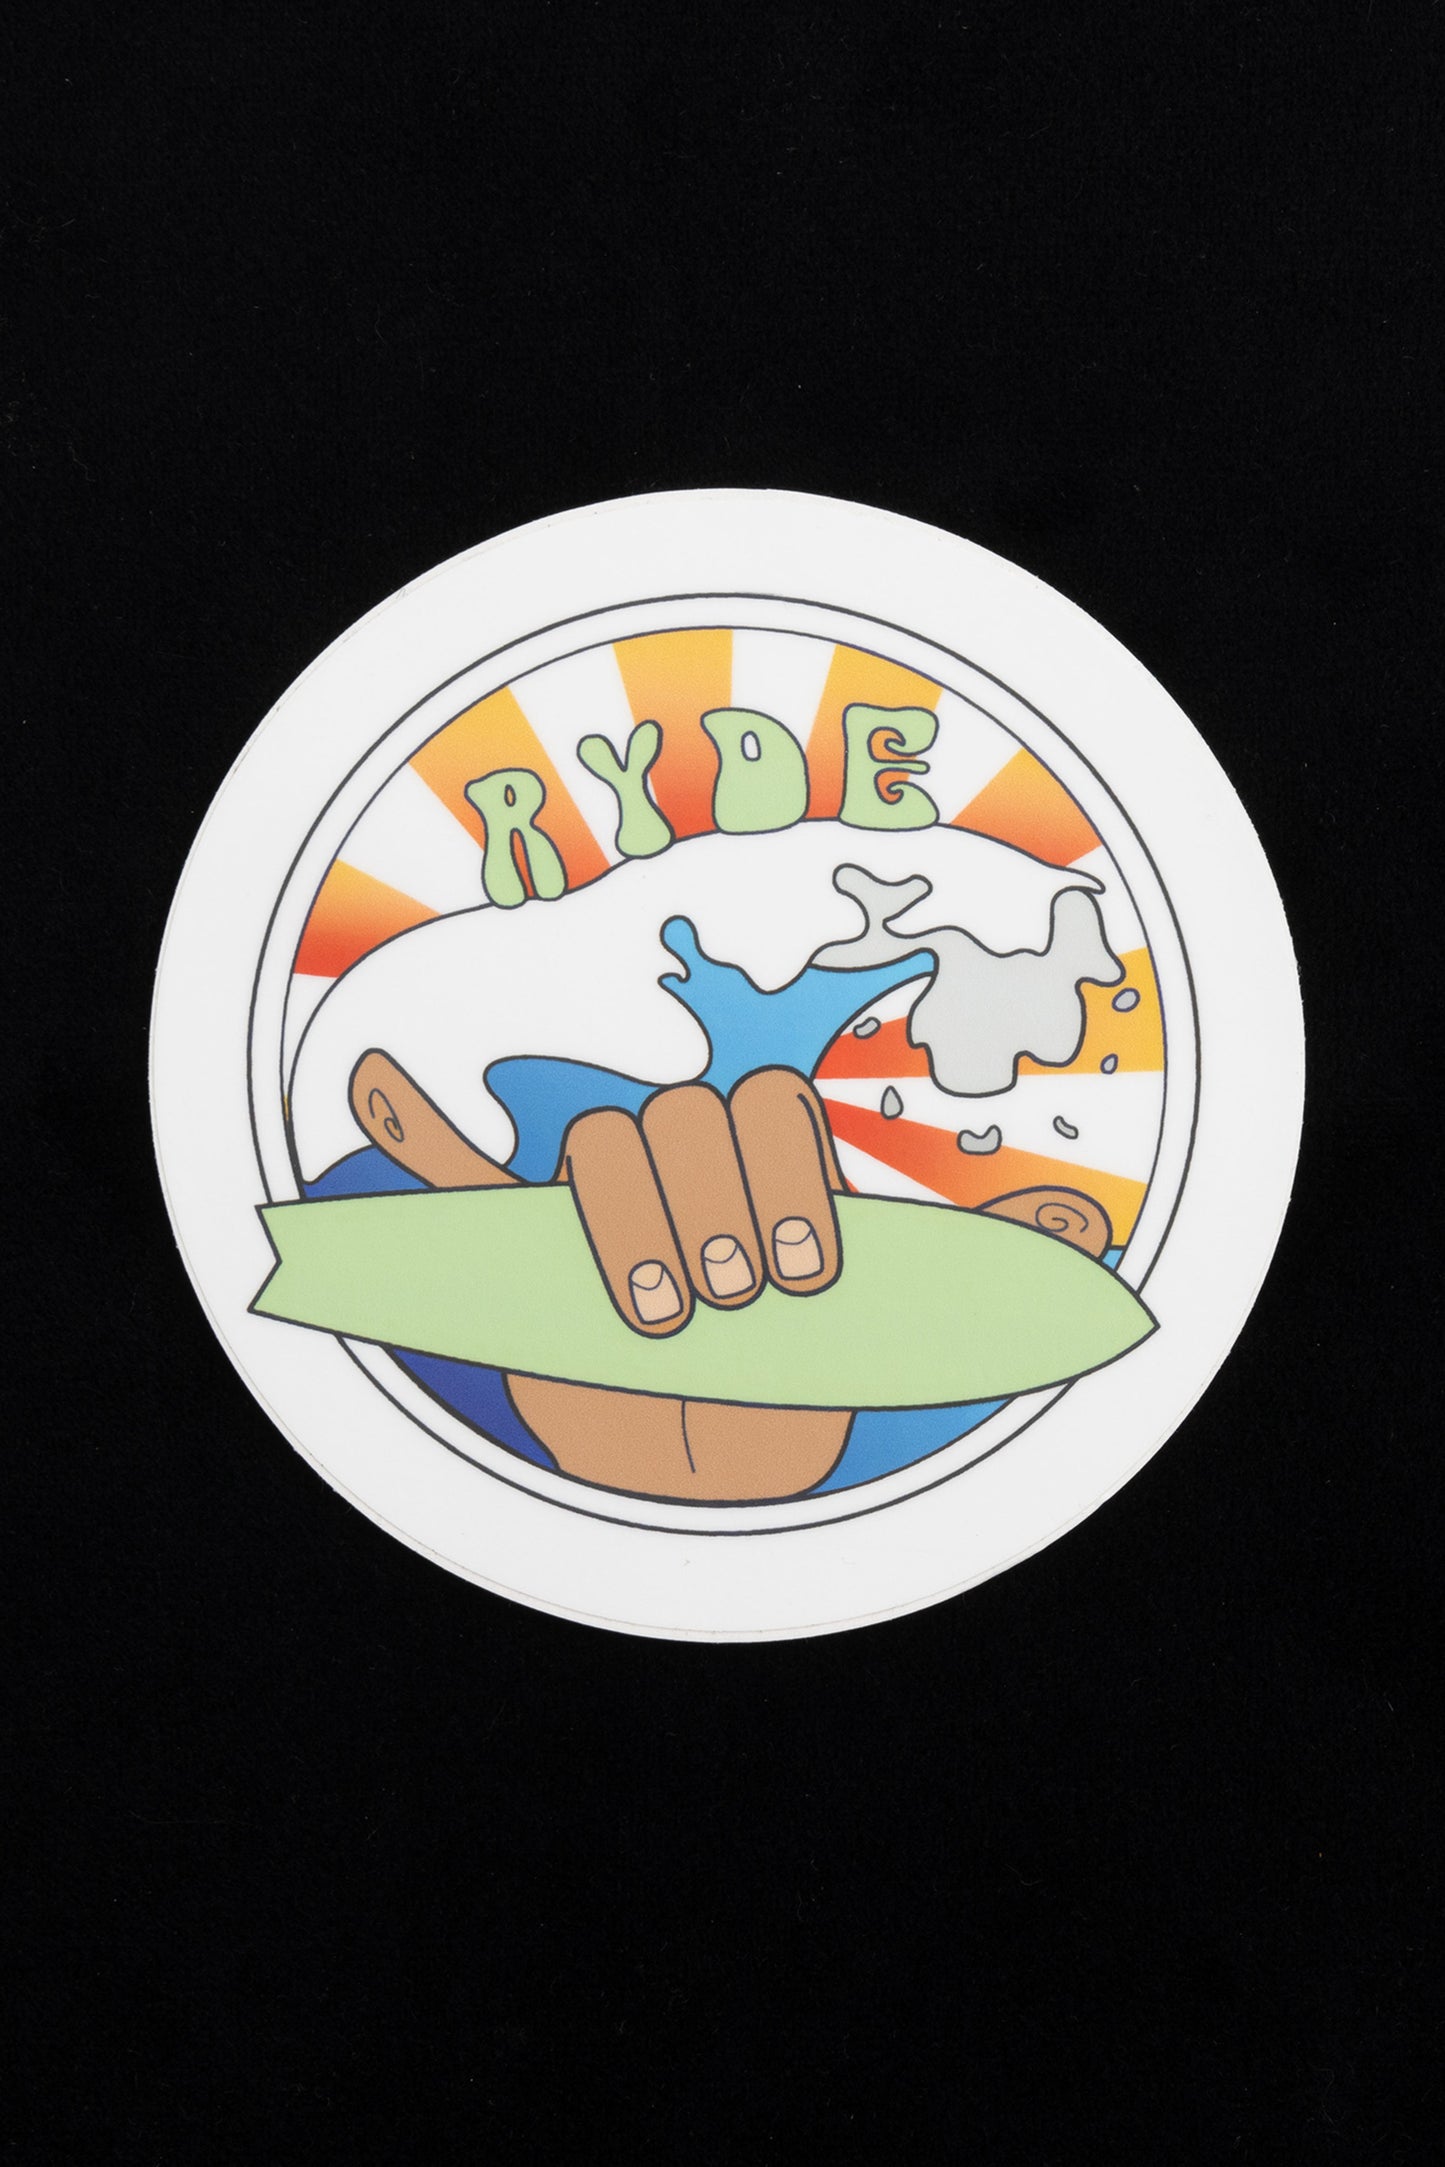 ryde 4 lyfe - Sunrise Surf Sticker